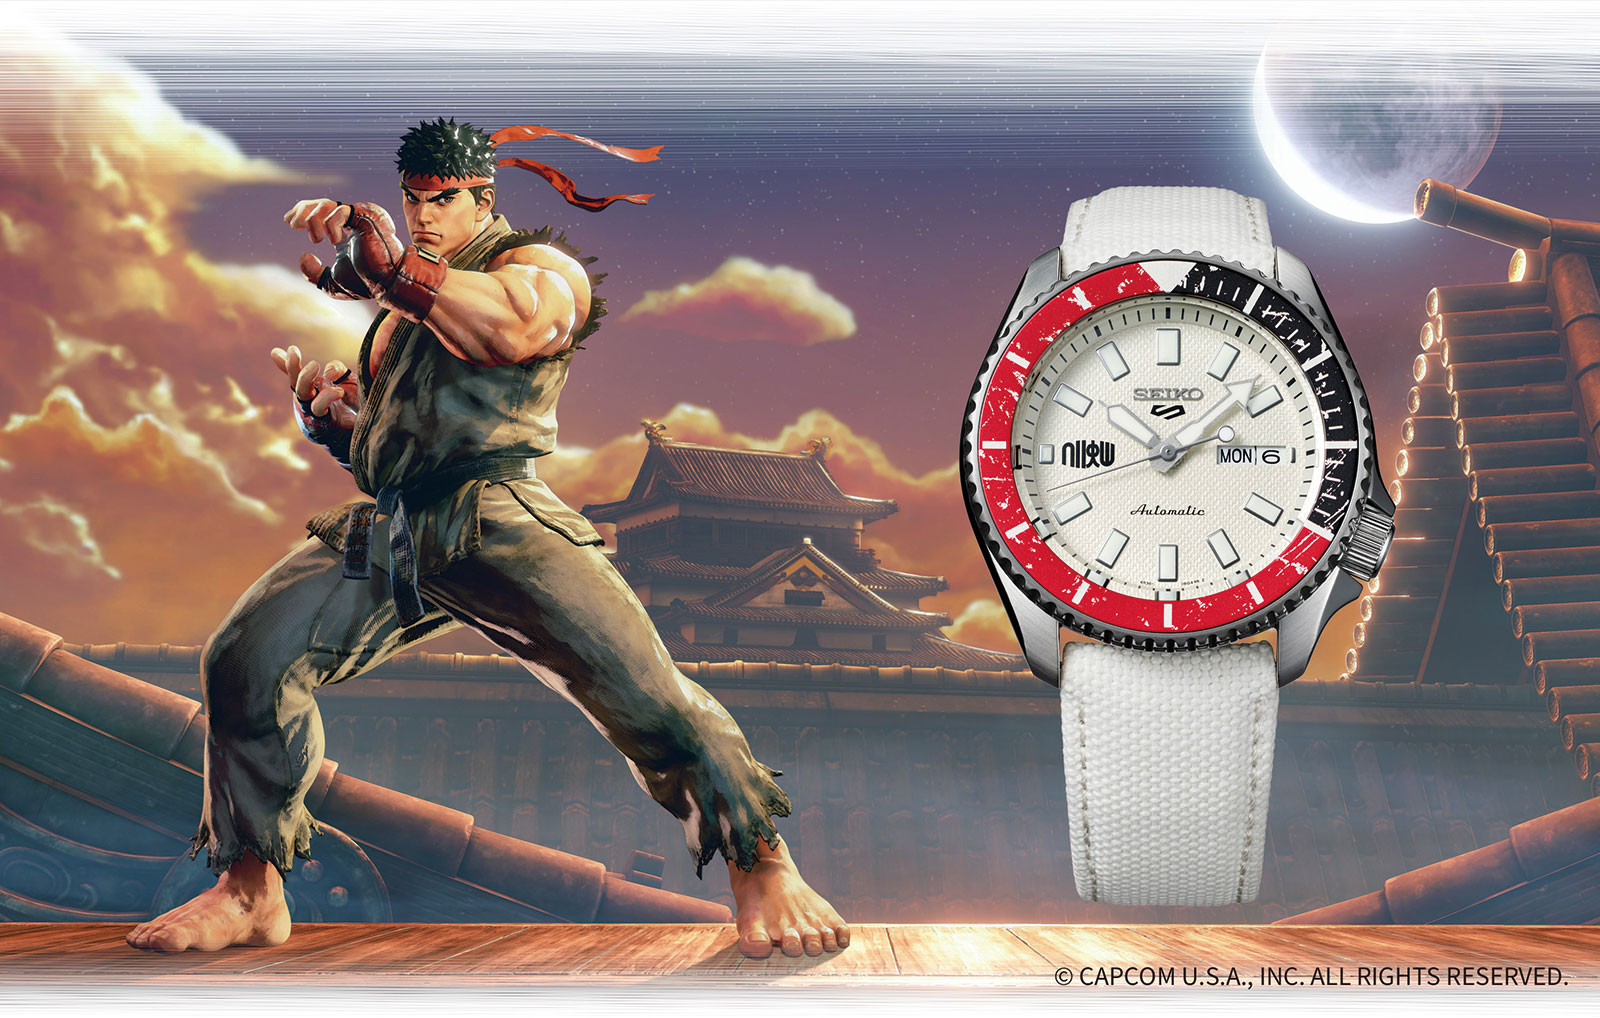 Seiko Introduces The Seiko 5 Sports X Street Fighter V Sjx Watches